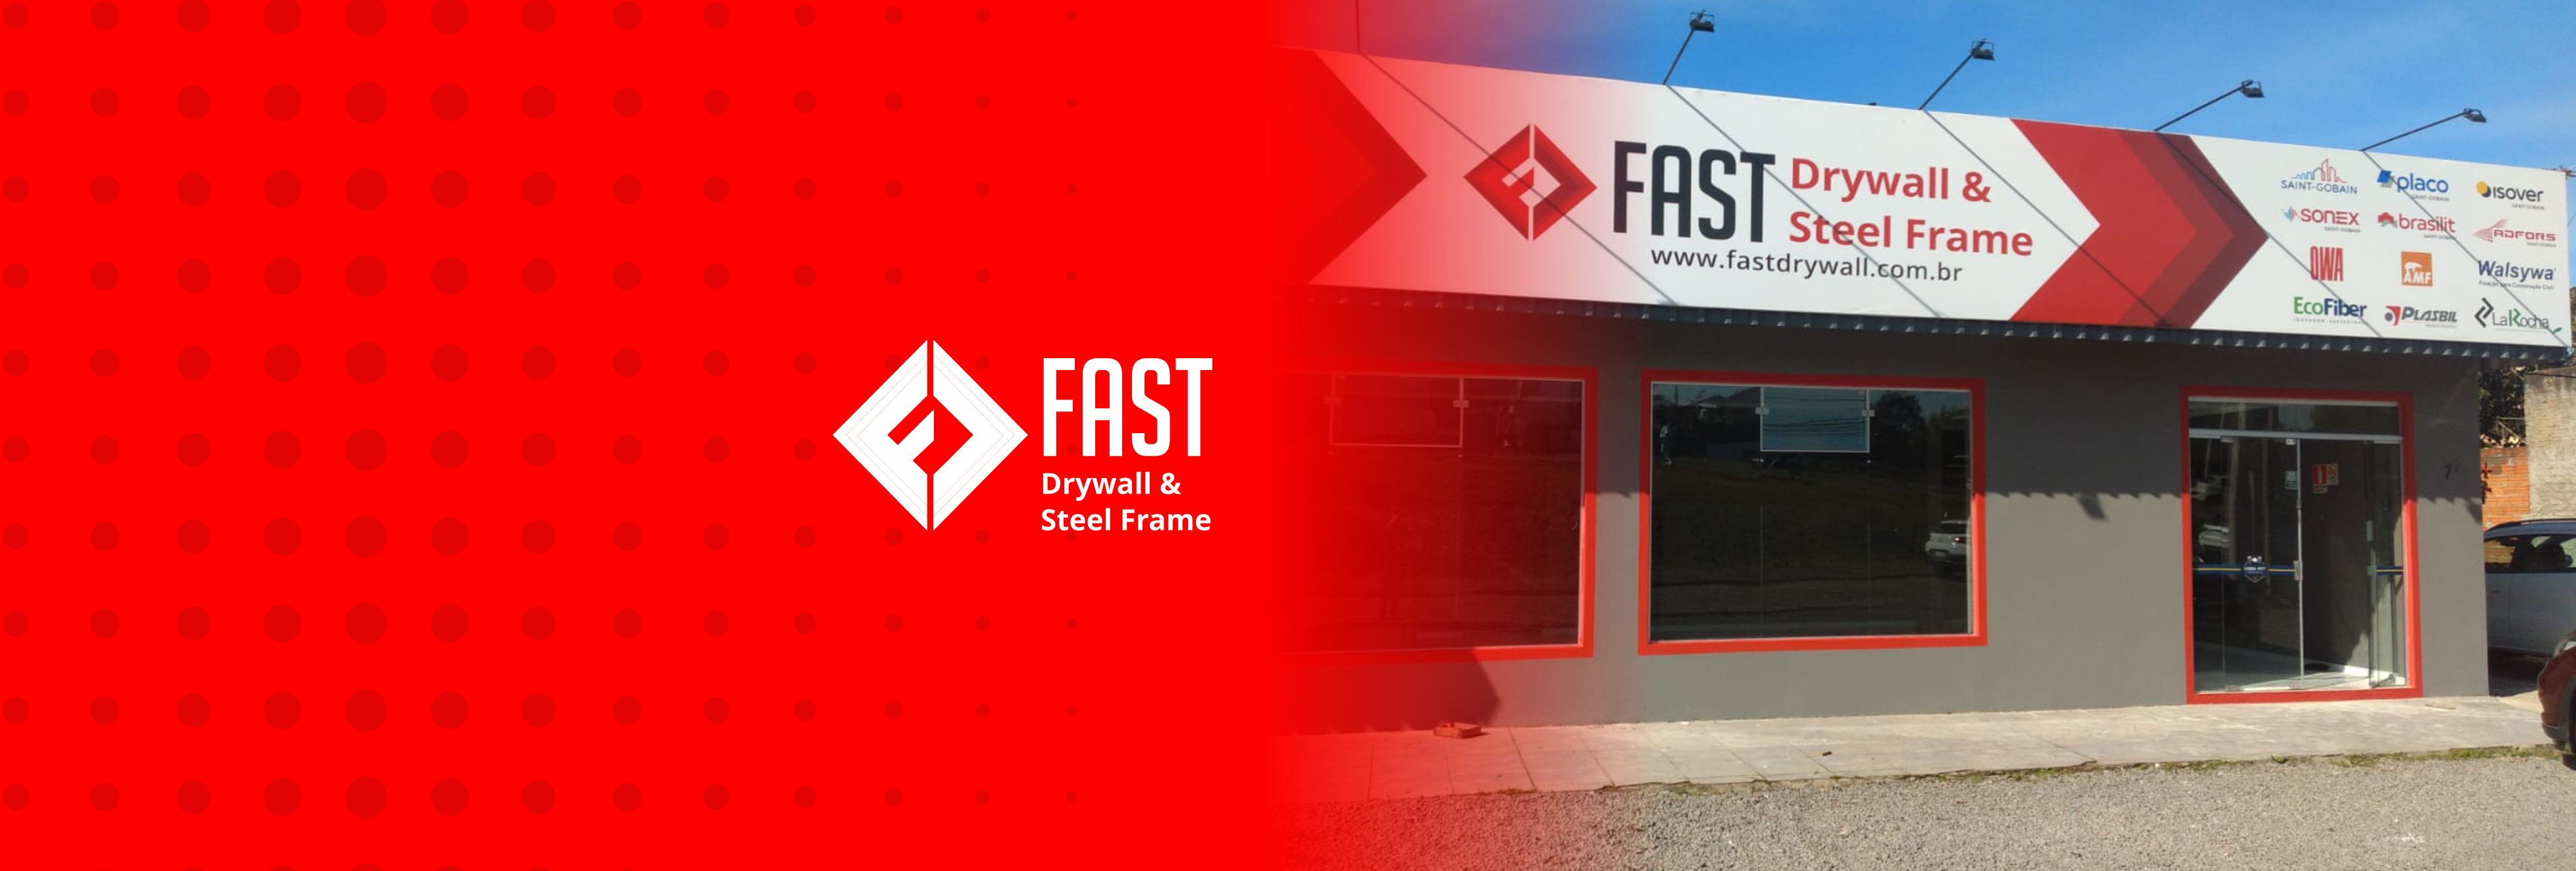 Logo da Fast e fachada de uma loja Fast Drywall